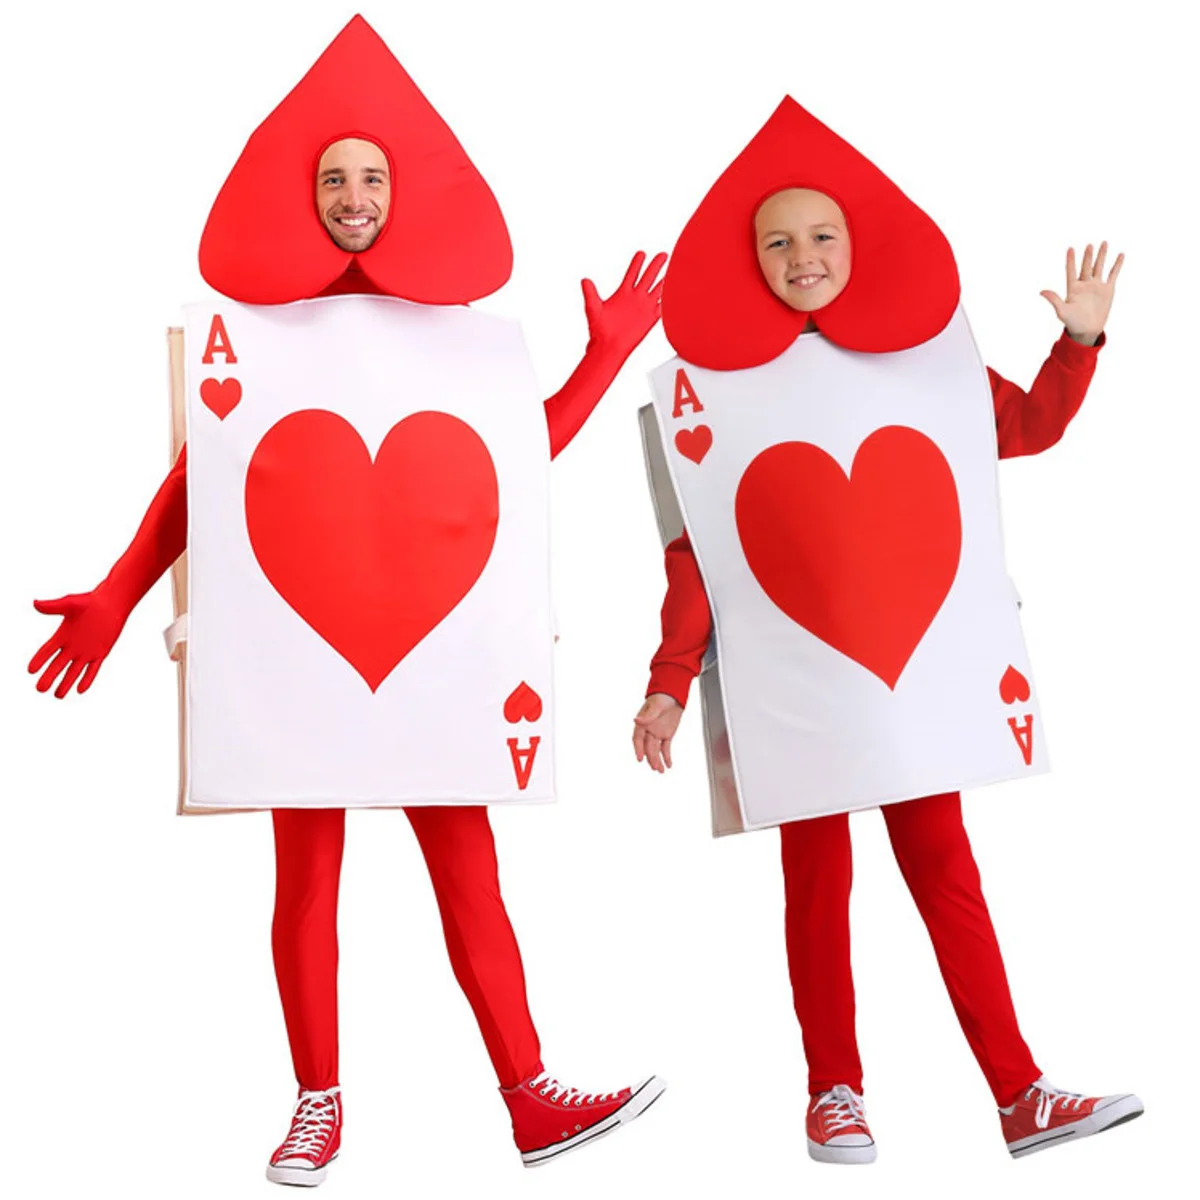 zanof-hearts-poker-playing-card-costume-pour-enfants-halloween-cosplay-unisexe-parent-enfant-tunique-chapeau-trempe